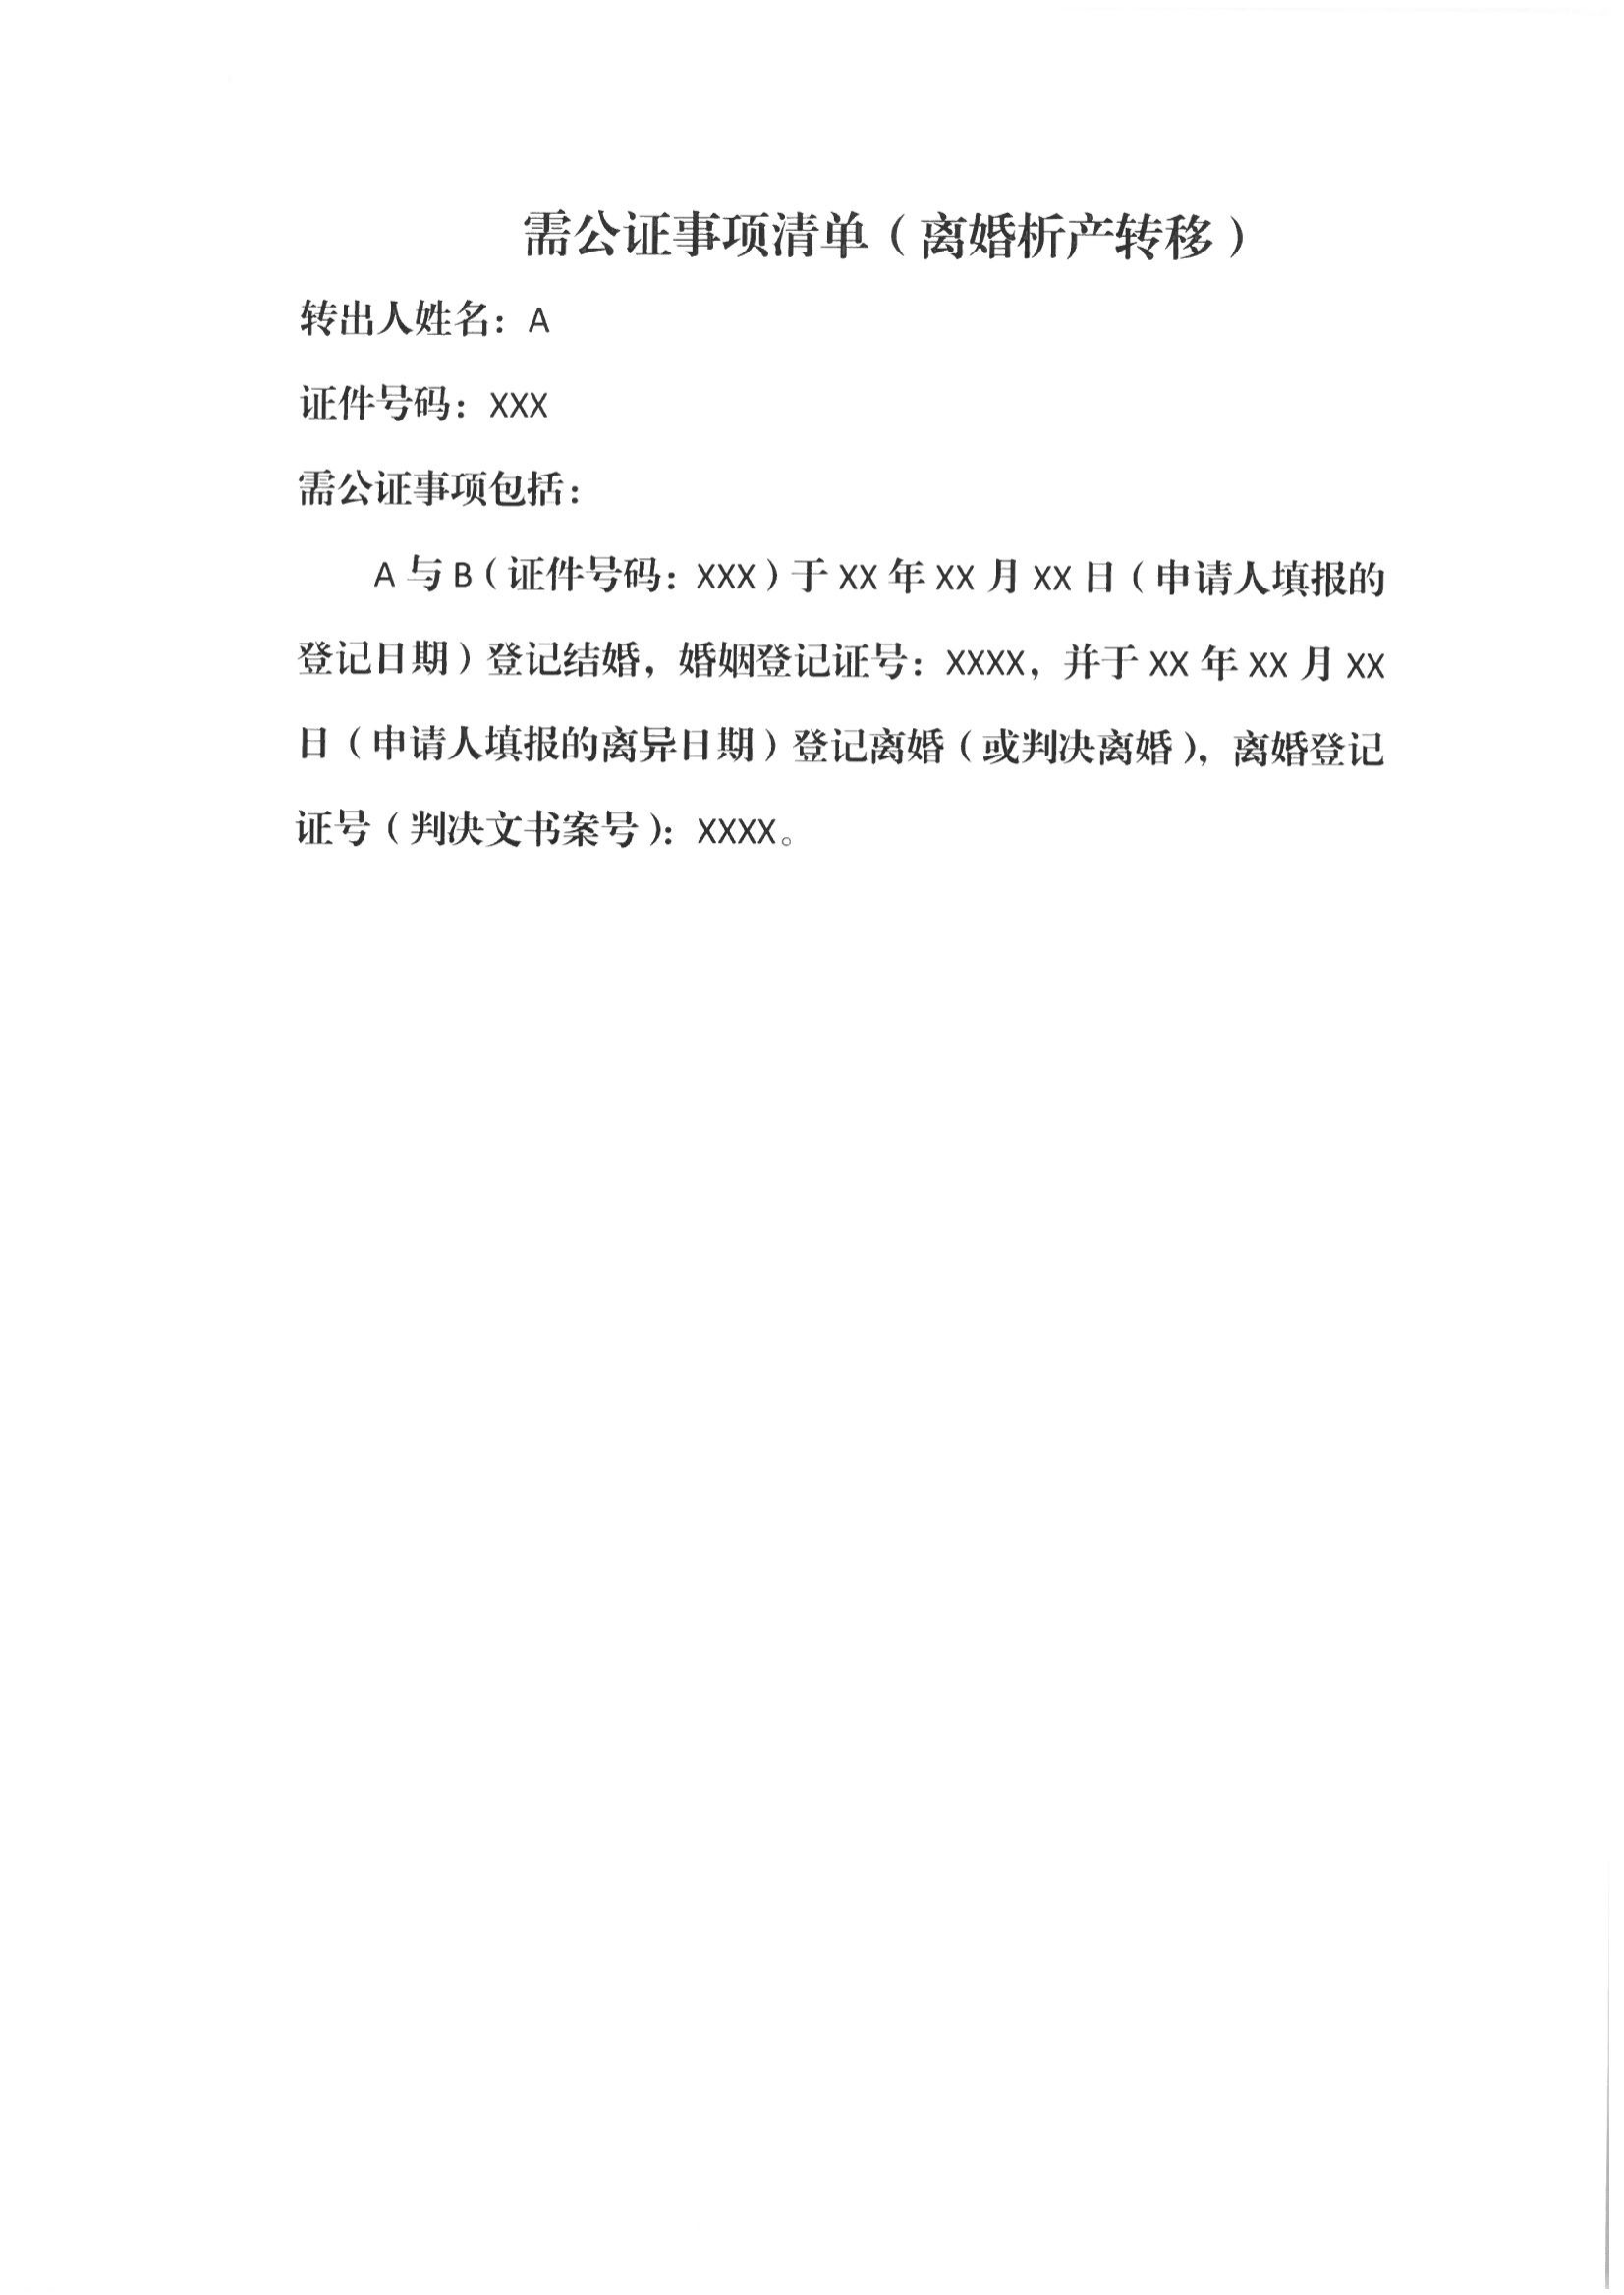 京公协字【2021】21号 北京市公证协会规范执业指引【第13号】_52